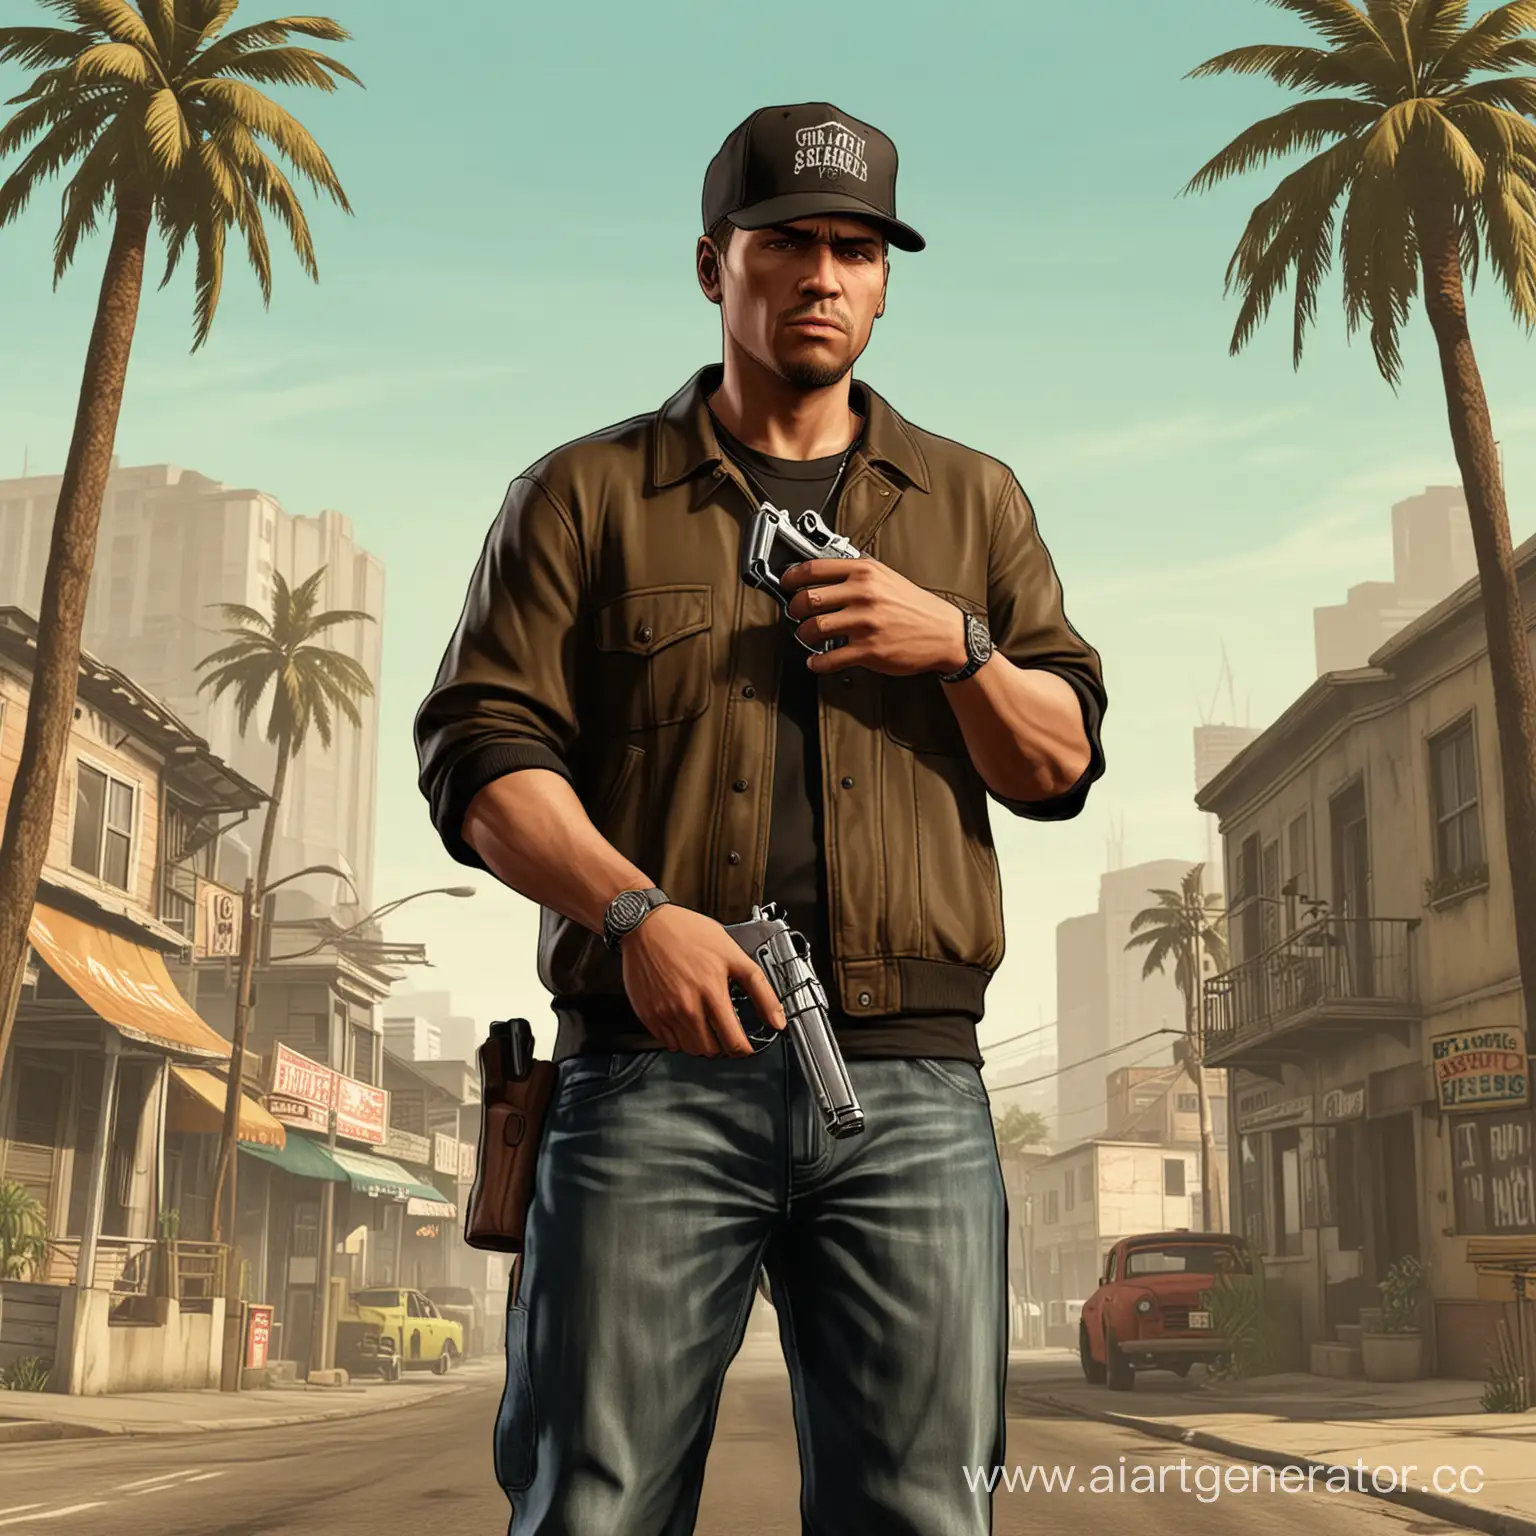 Urban-Vigilante-Man-with-Pistol-in-GTA-San-Andreas-Cityscape